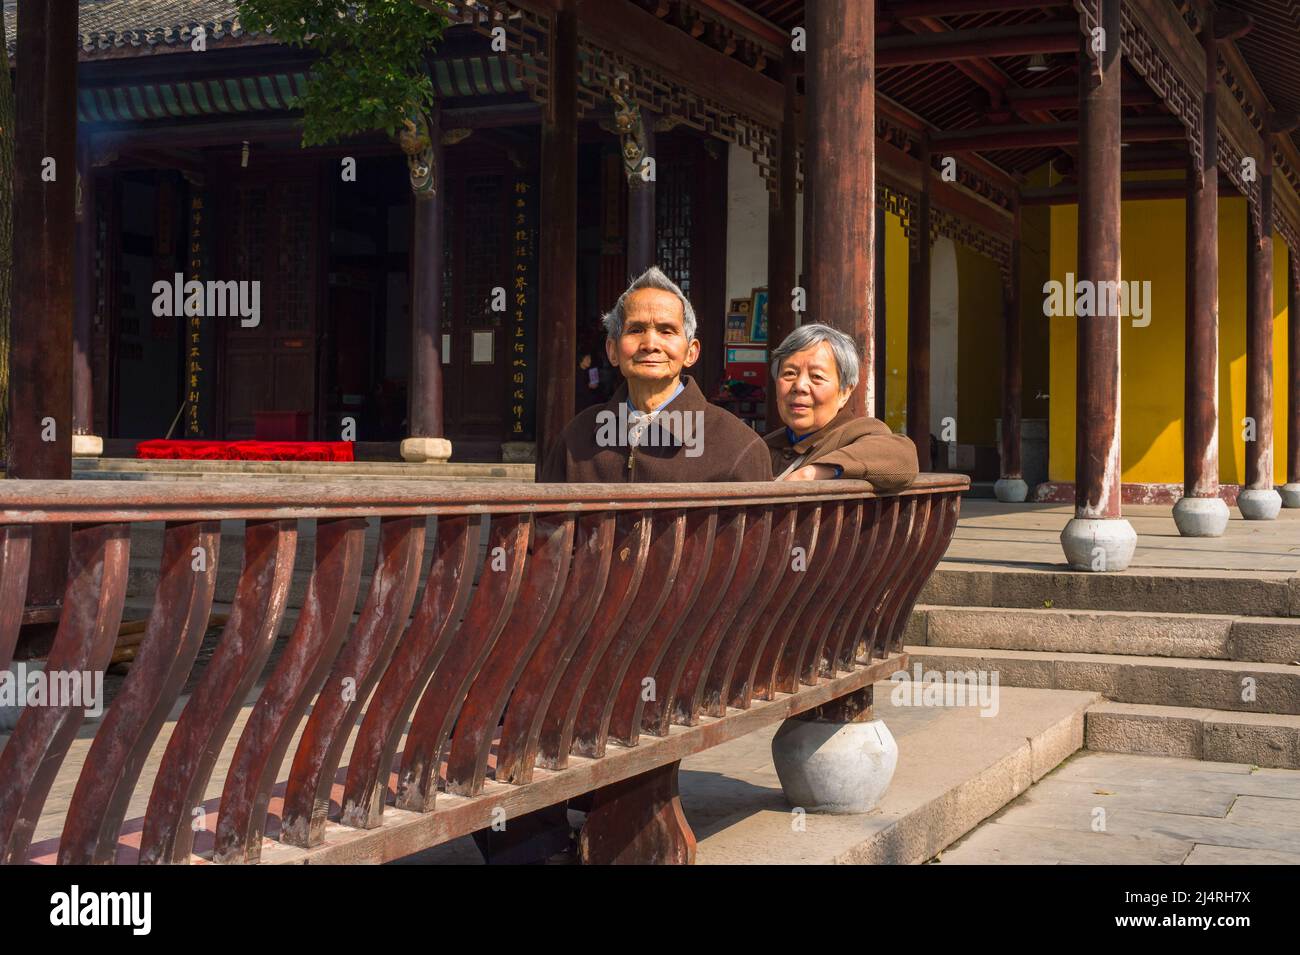 ANQING, CHINA - 22. MÄRZ: Ältere Männer und Frauen sitzen auf einer langen Bank, um eine Pause zu machen. Ein älteres Paar, 80 Jahre alt, sitzt auf einer Bank im Yinjiang TEM Stockfoto